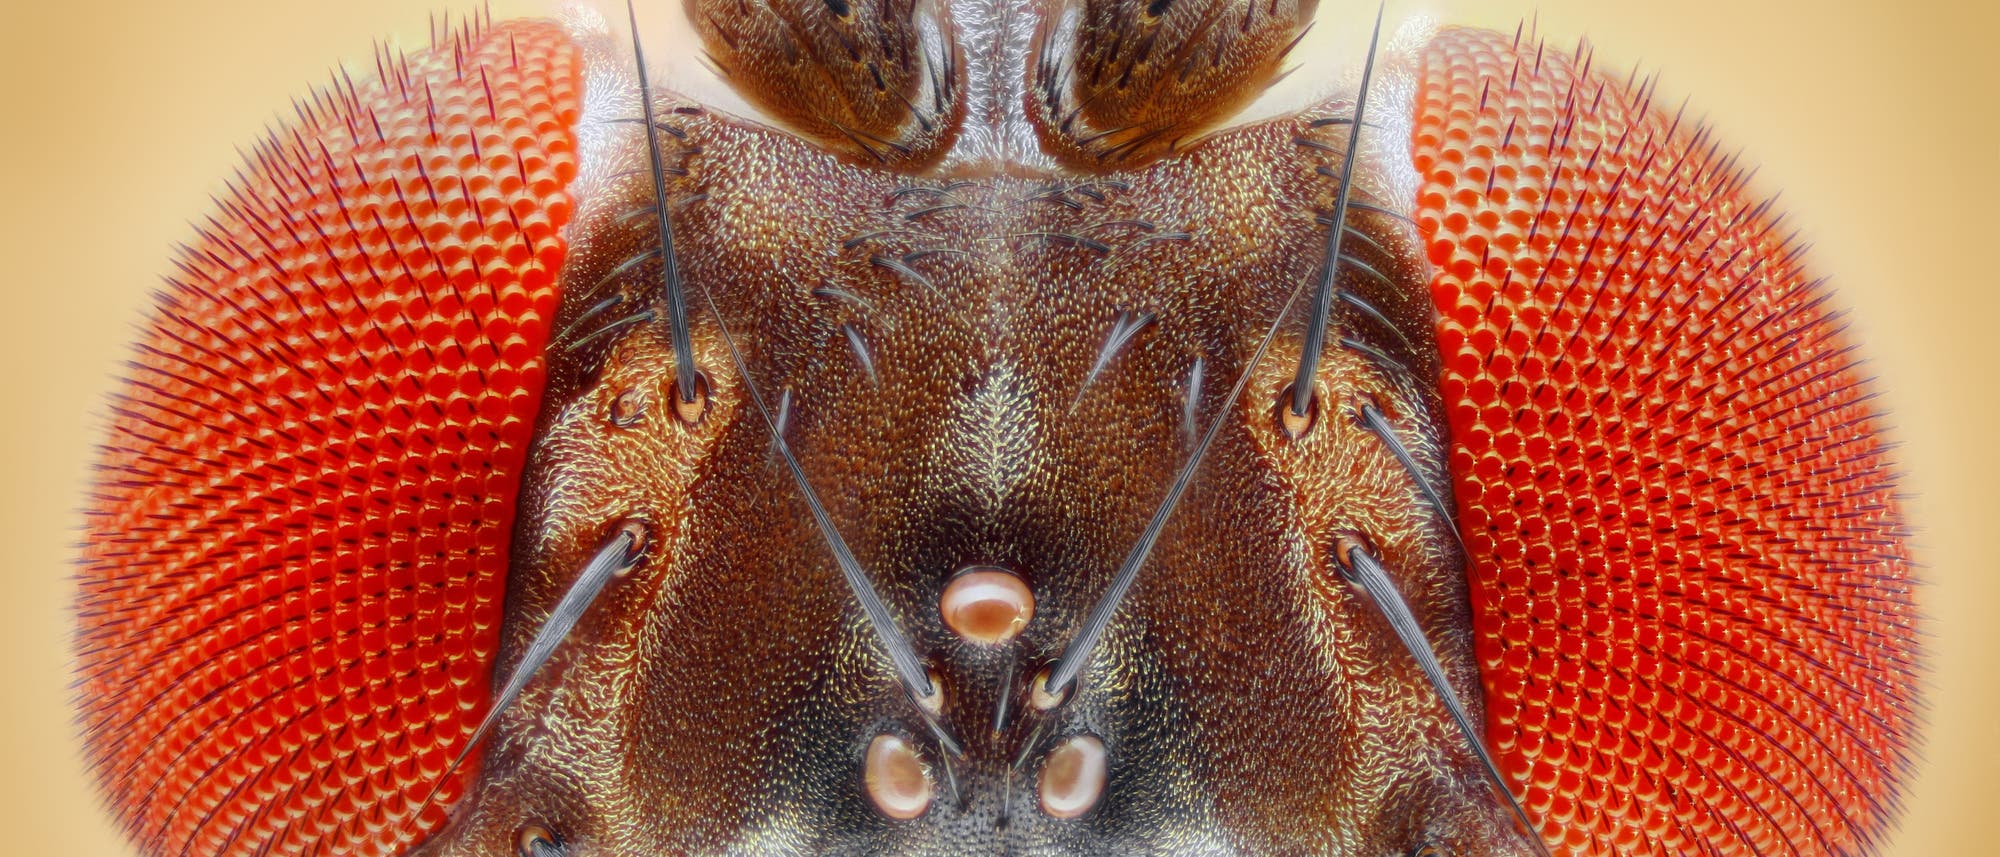 Frontale Großaufnahme des Kopfes einer Drosophila melanogaster, deutlich sind ihre roten Augen zu erkennen